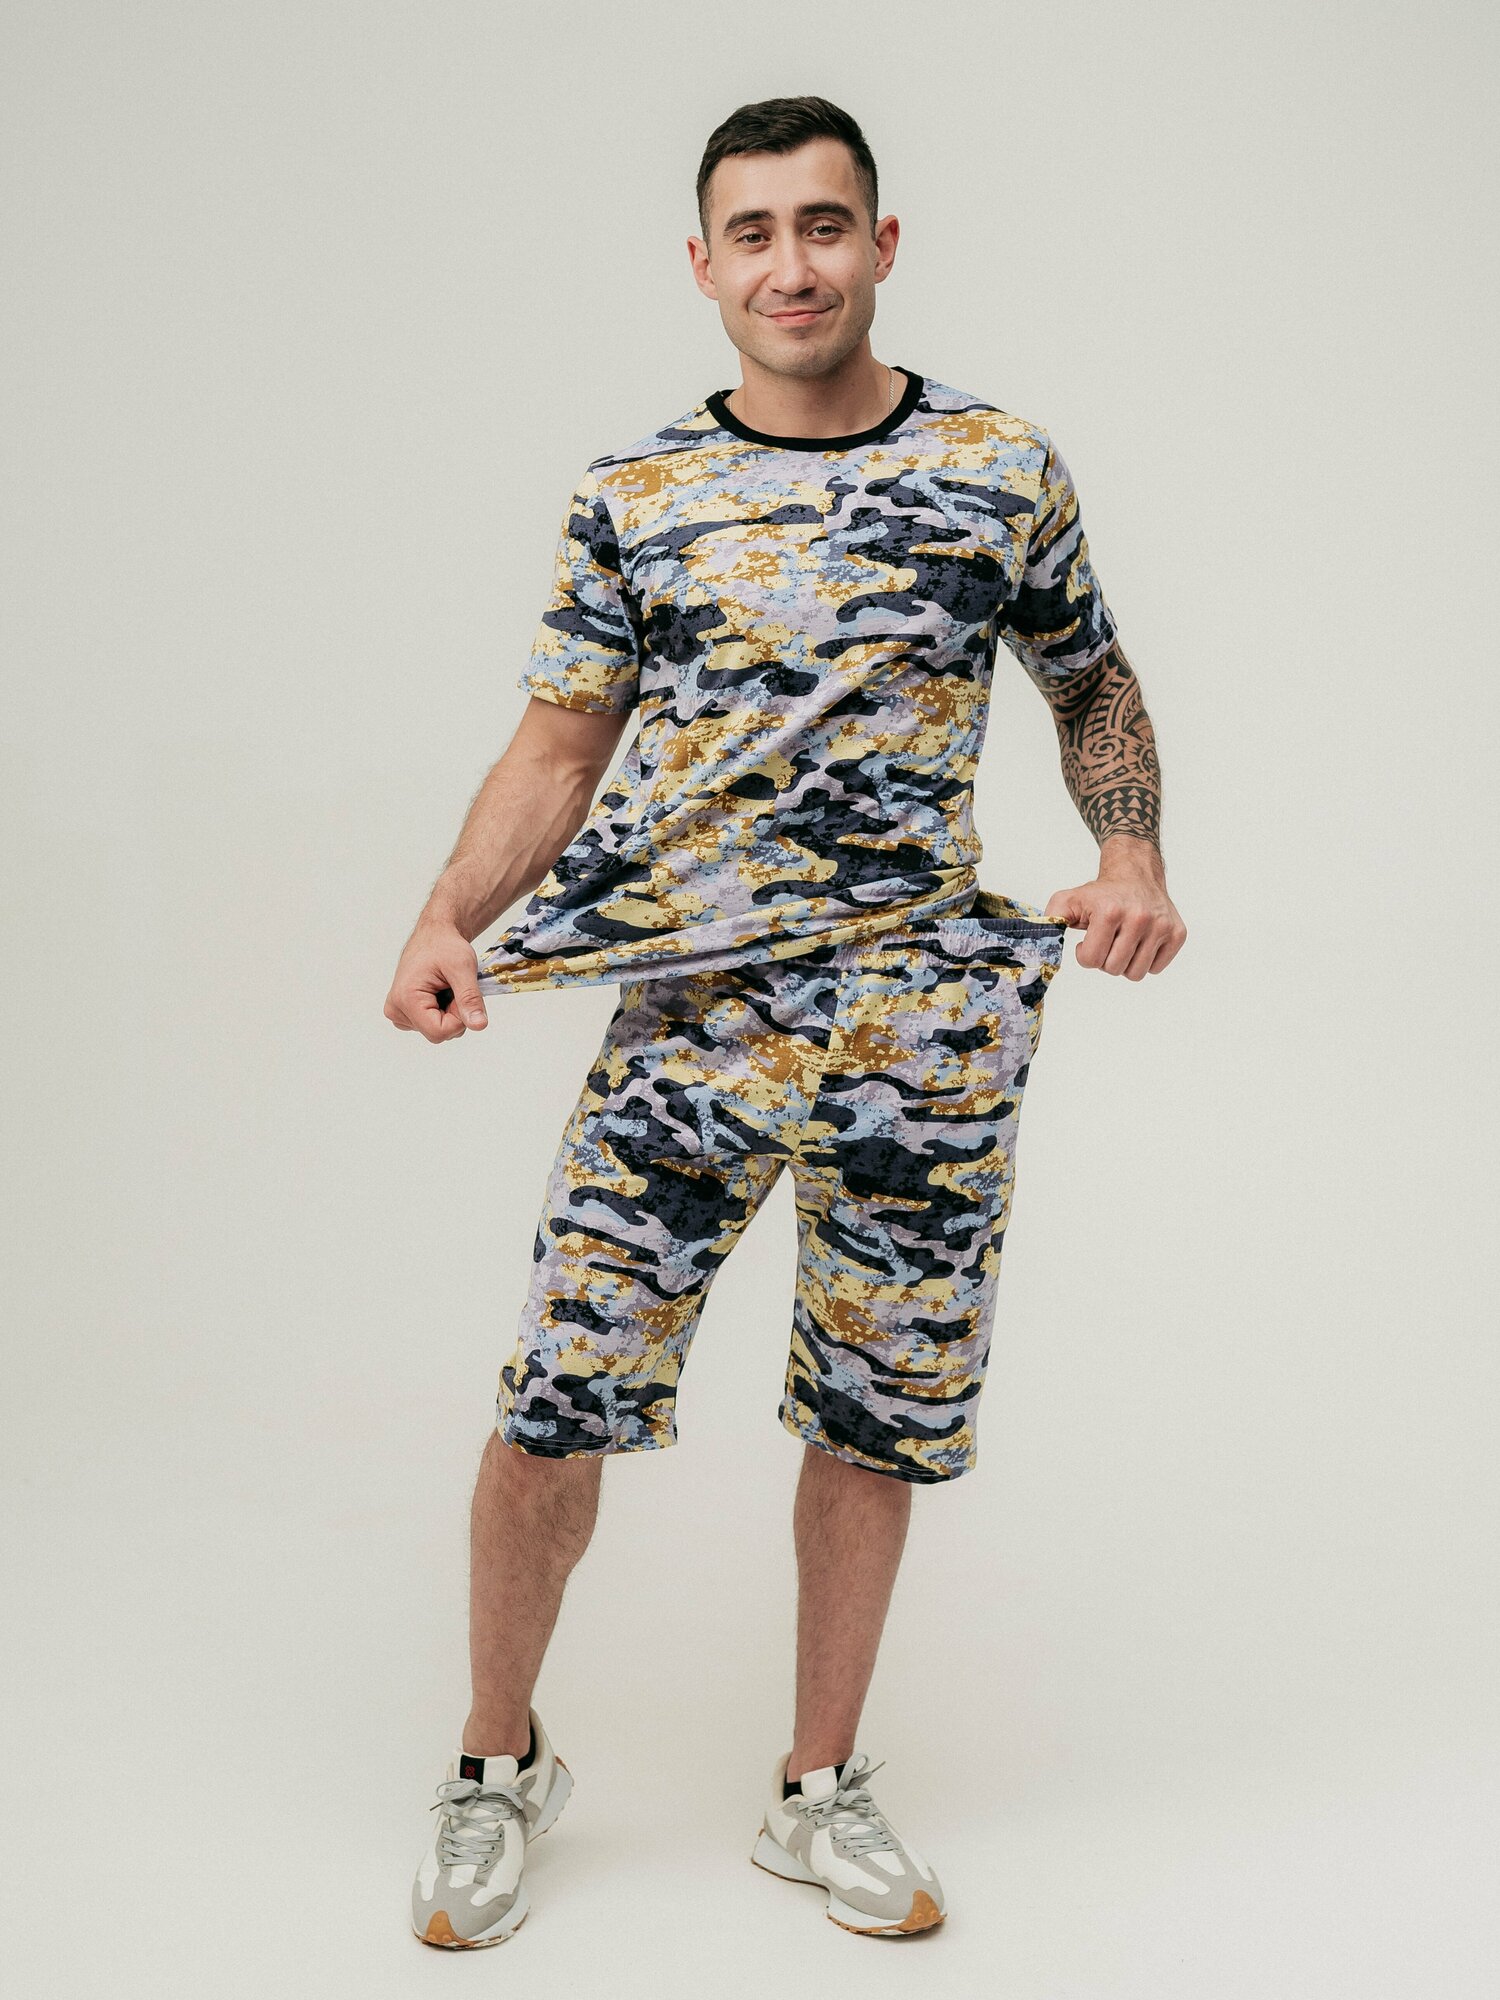 Мужская пижама, мужской пижамный комплект ARISTARHOV, Футболка + Шорты, графит, бежевый, размер 52 - фотография № 12